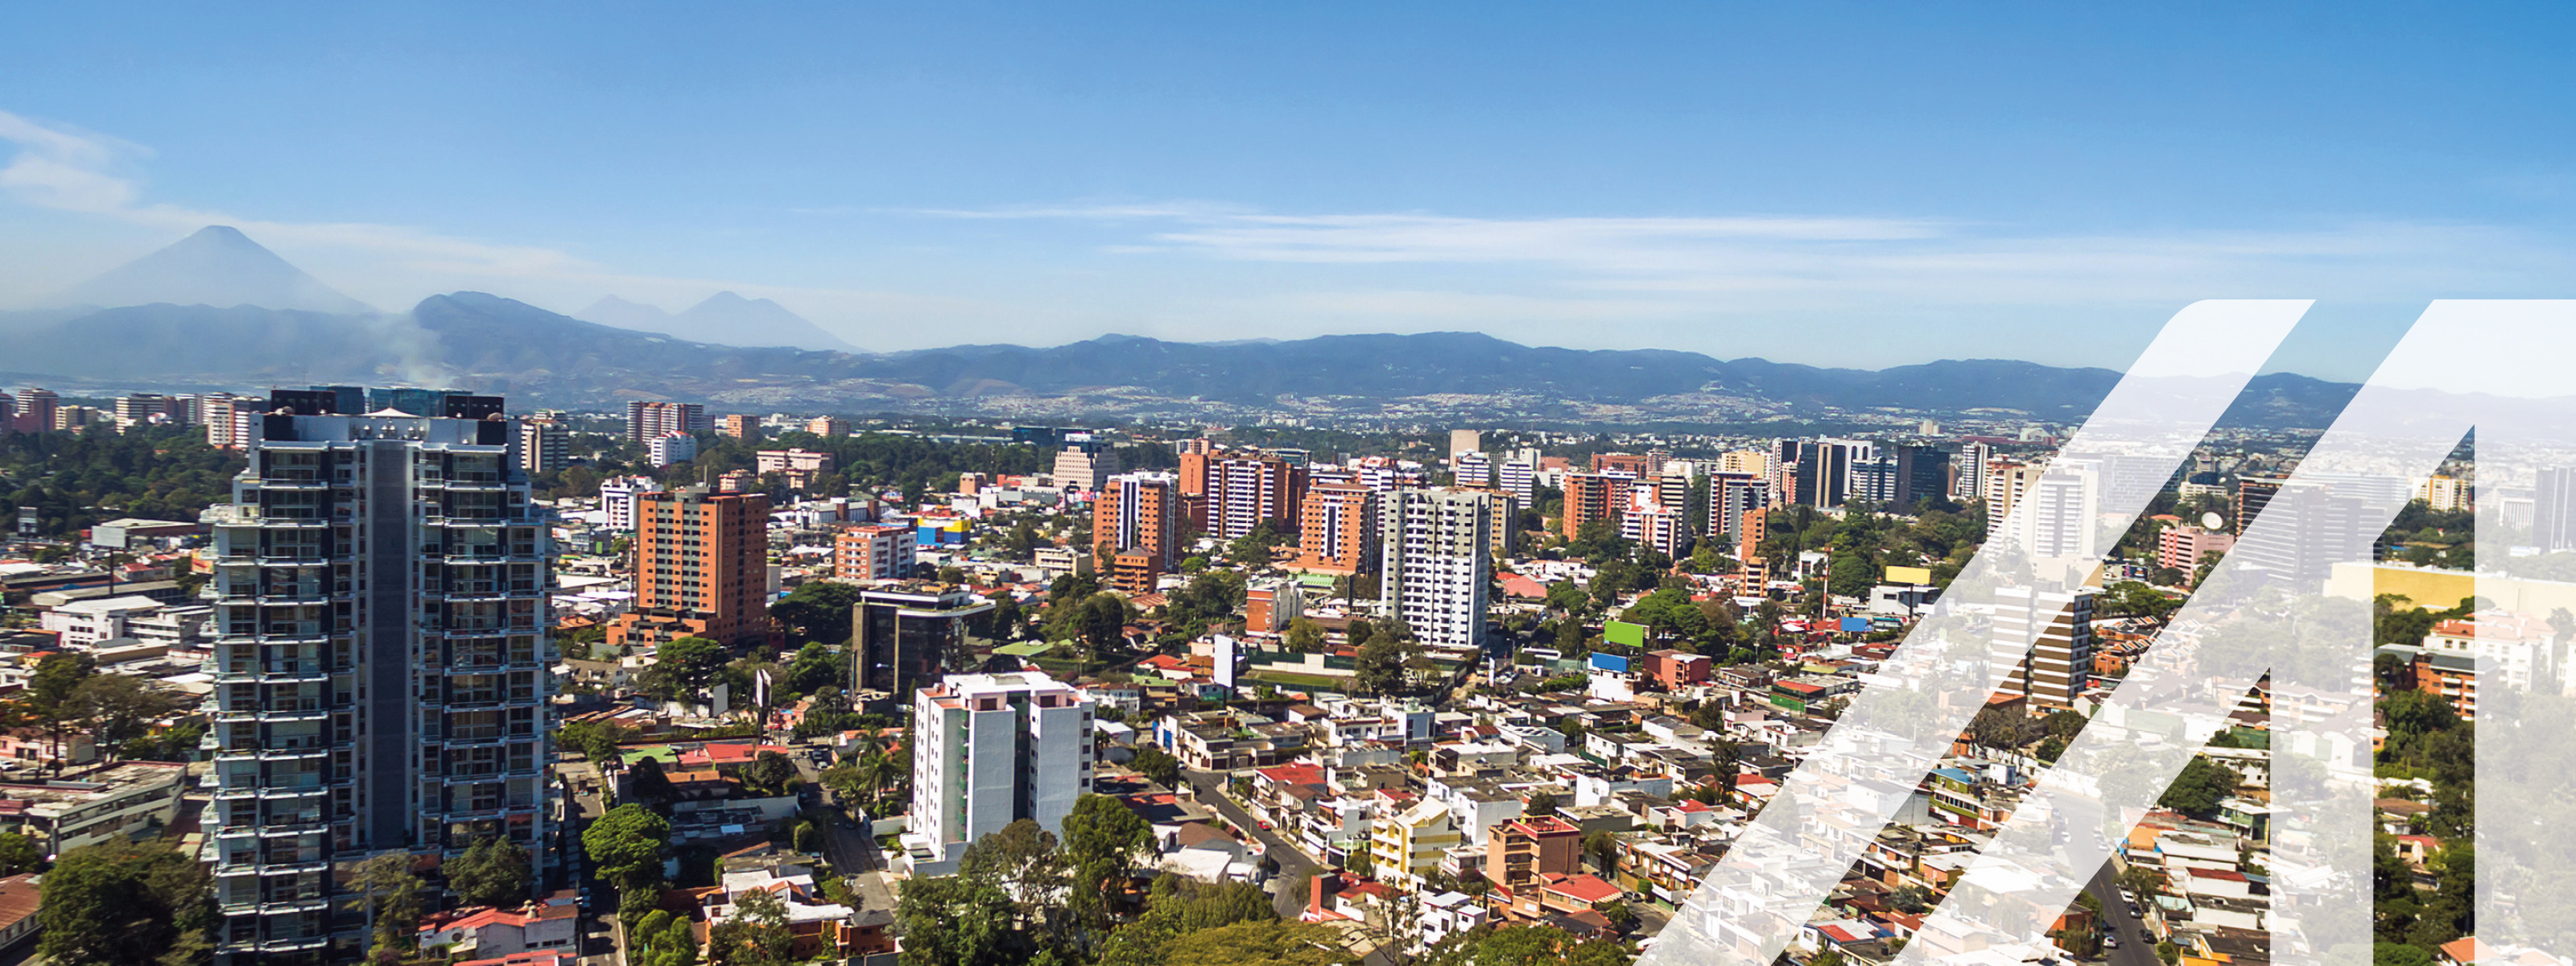 Stadtansicht von Guatemala City: Hochhäuser umgeben von niedrigen Häusern, durchbrochen von grünen Bäumen, im Hintergrund Bergkette unter blauem Himmel